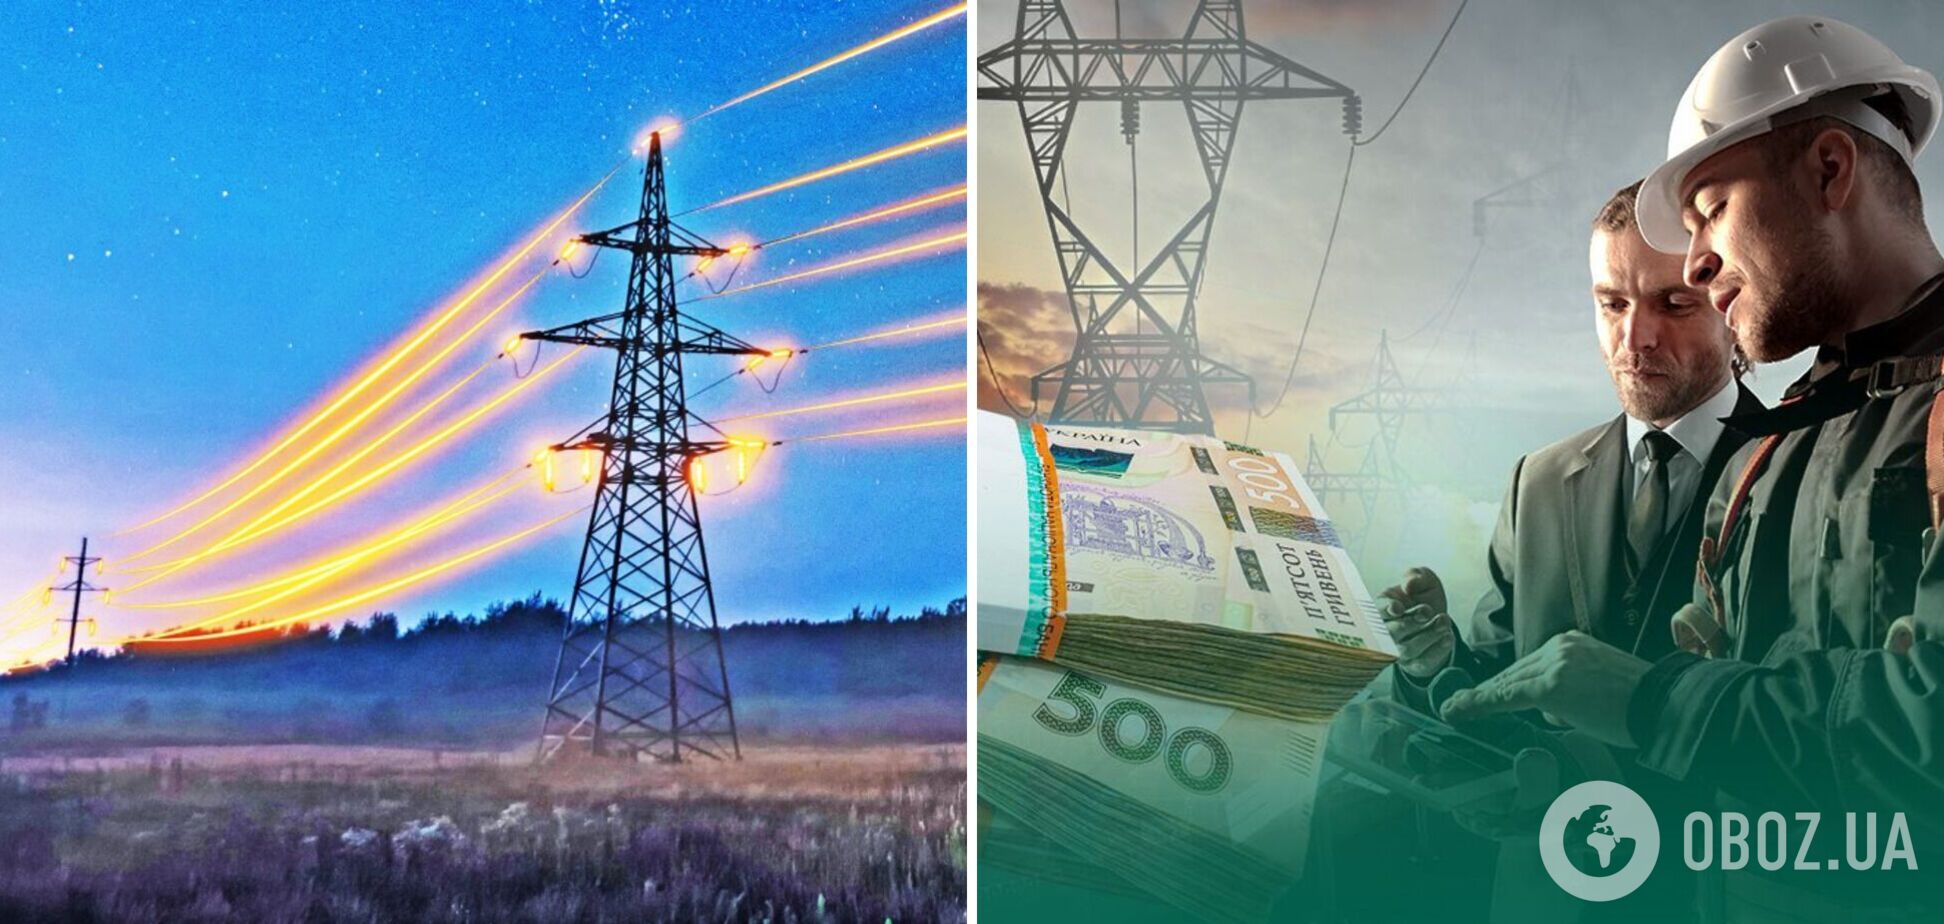 Зайве підвищення тарифу на передачу електроенергії коштуватиме економіці понад 13 млрд, – Кисилевський